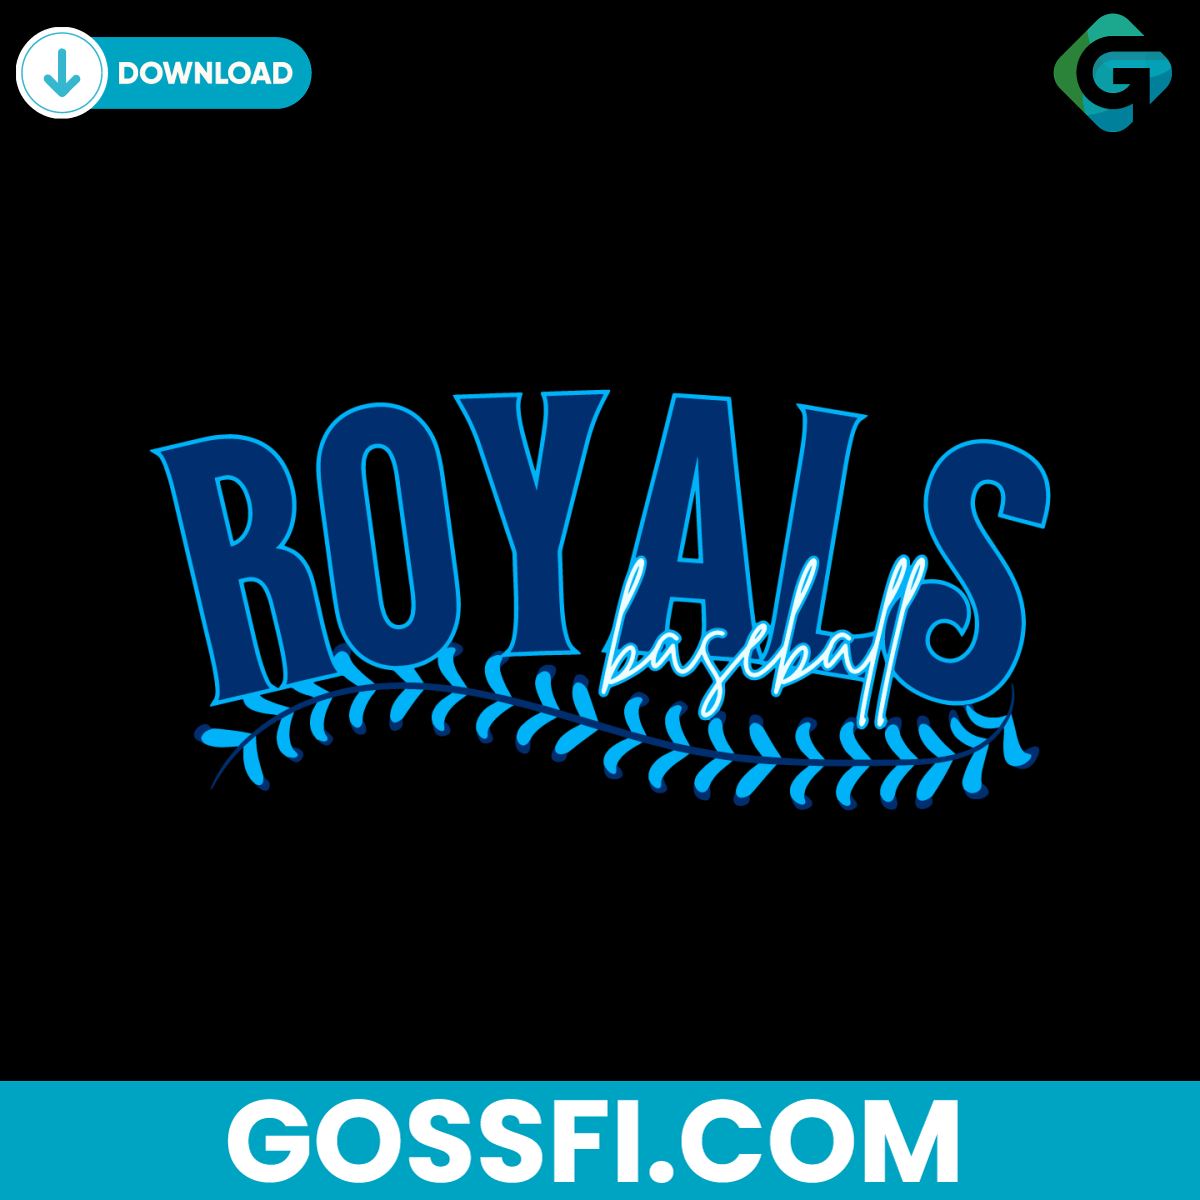 royals-baseball-vintage-mlb-team-svg-digital-download